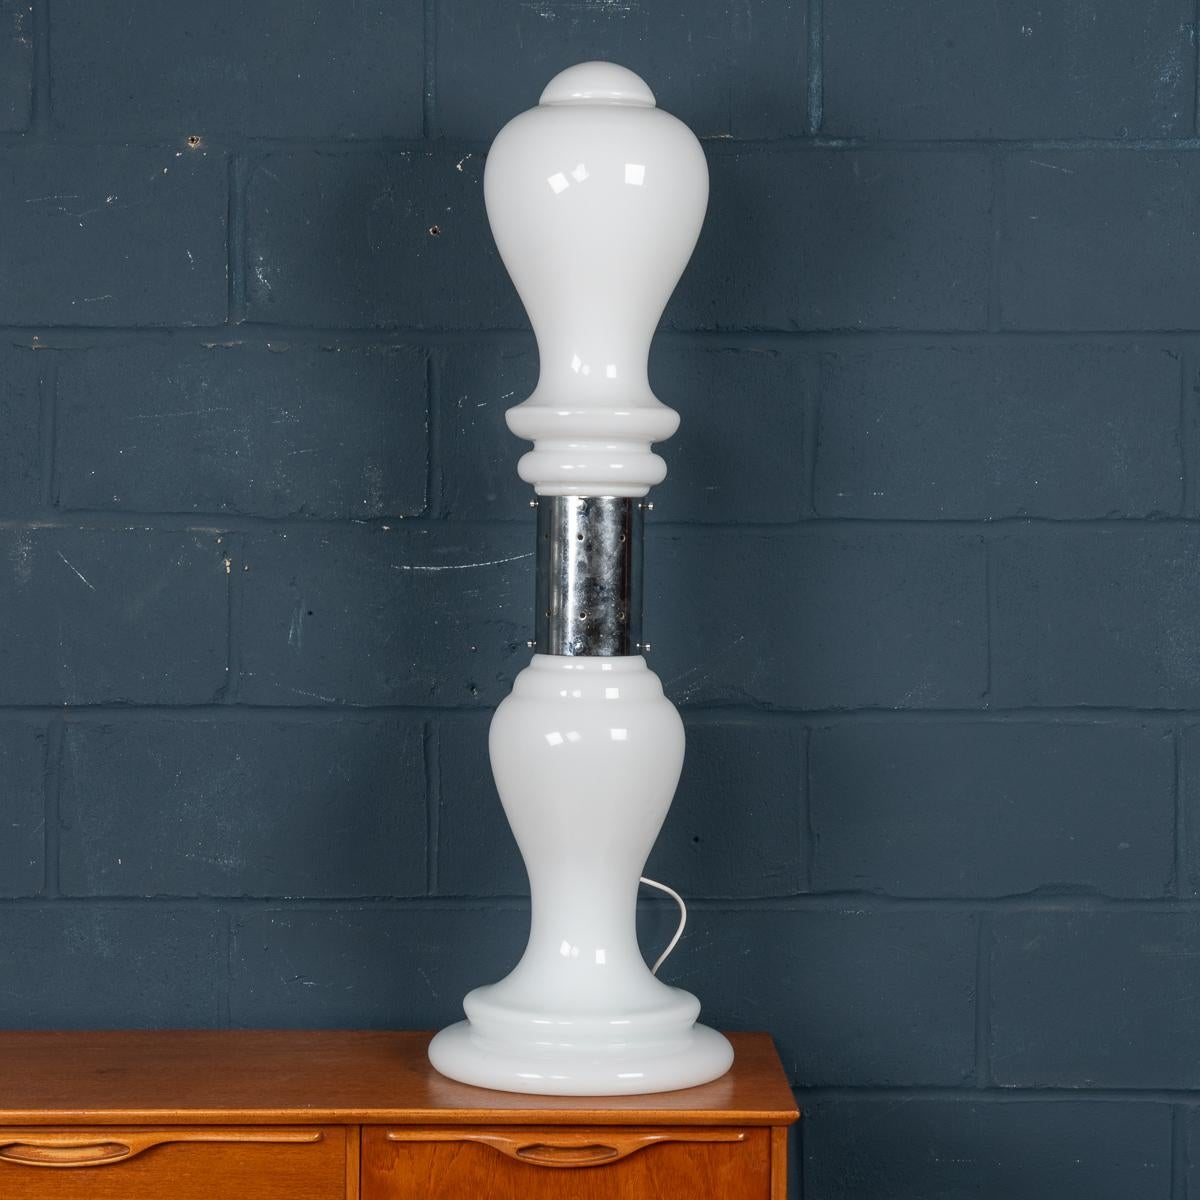 Magnifique lampadaire ou lampe de table italien vintage réalisé par Carlo Nason pour Mazzega. Produite à Murano, à Venise, dans les années 1980, cette lampe en verre illustre le savoir-faire de Carlo Nason. Nason a utilisé une jolie forme blanche